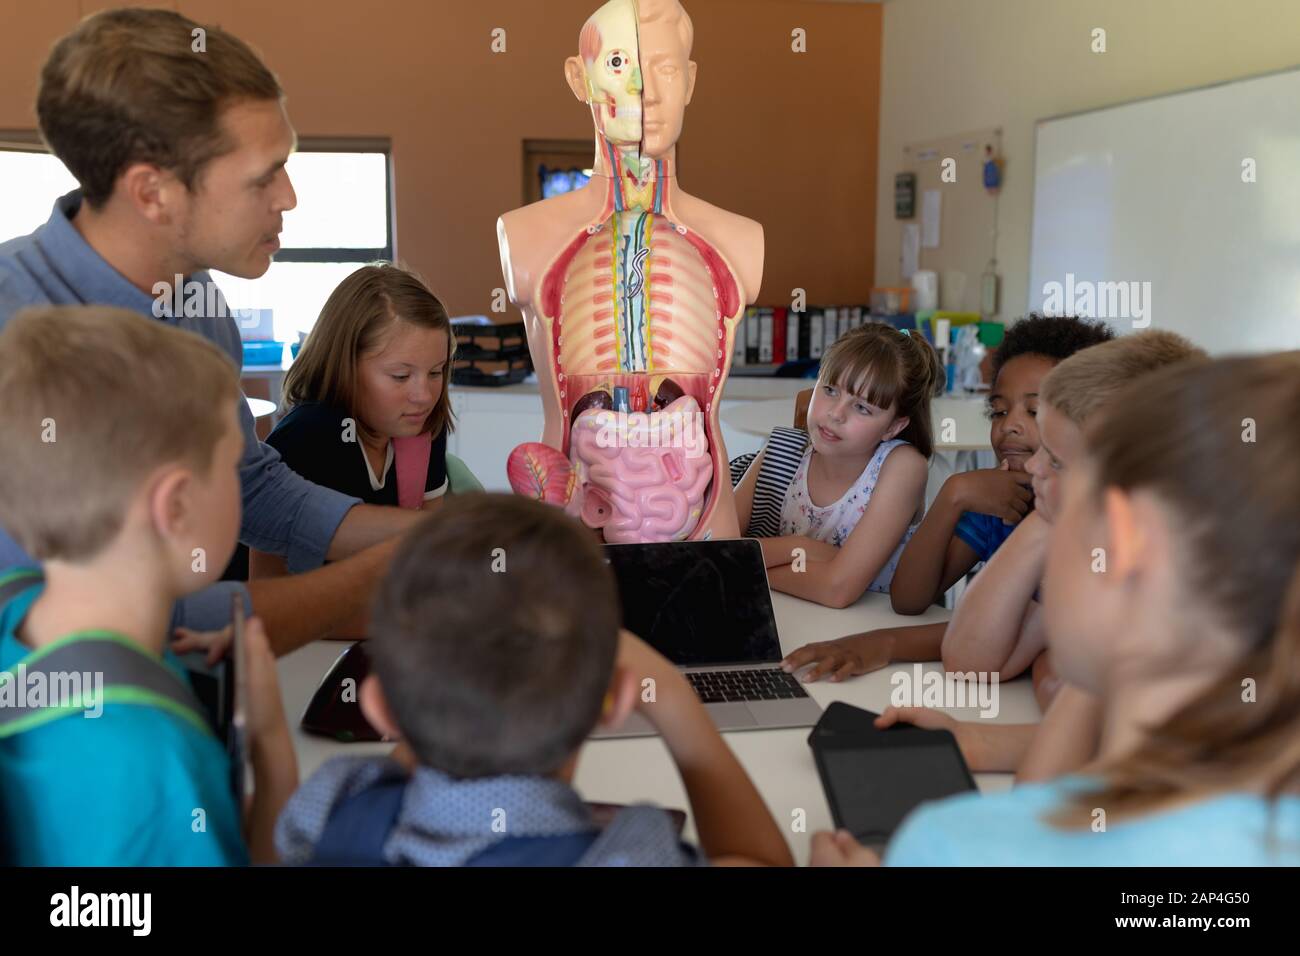 Insegnante maschile che usa un modello anatomico umano per insegnare Foto Stock